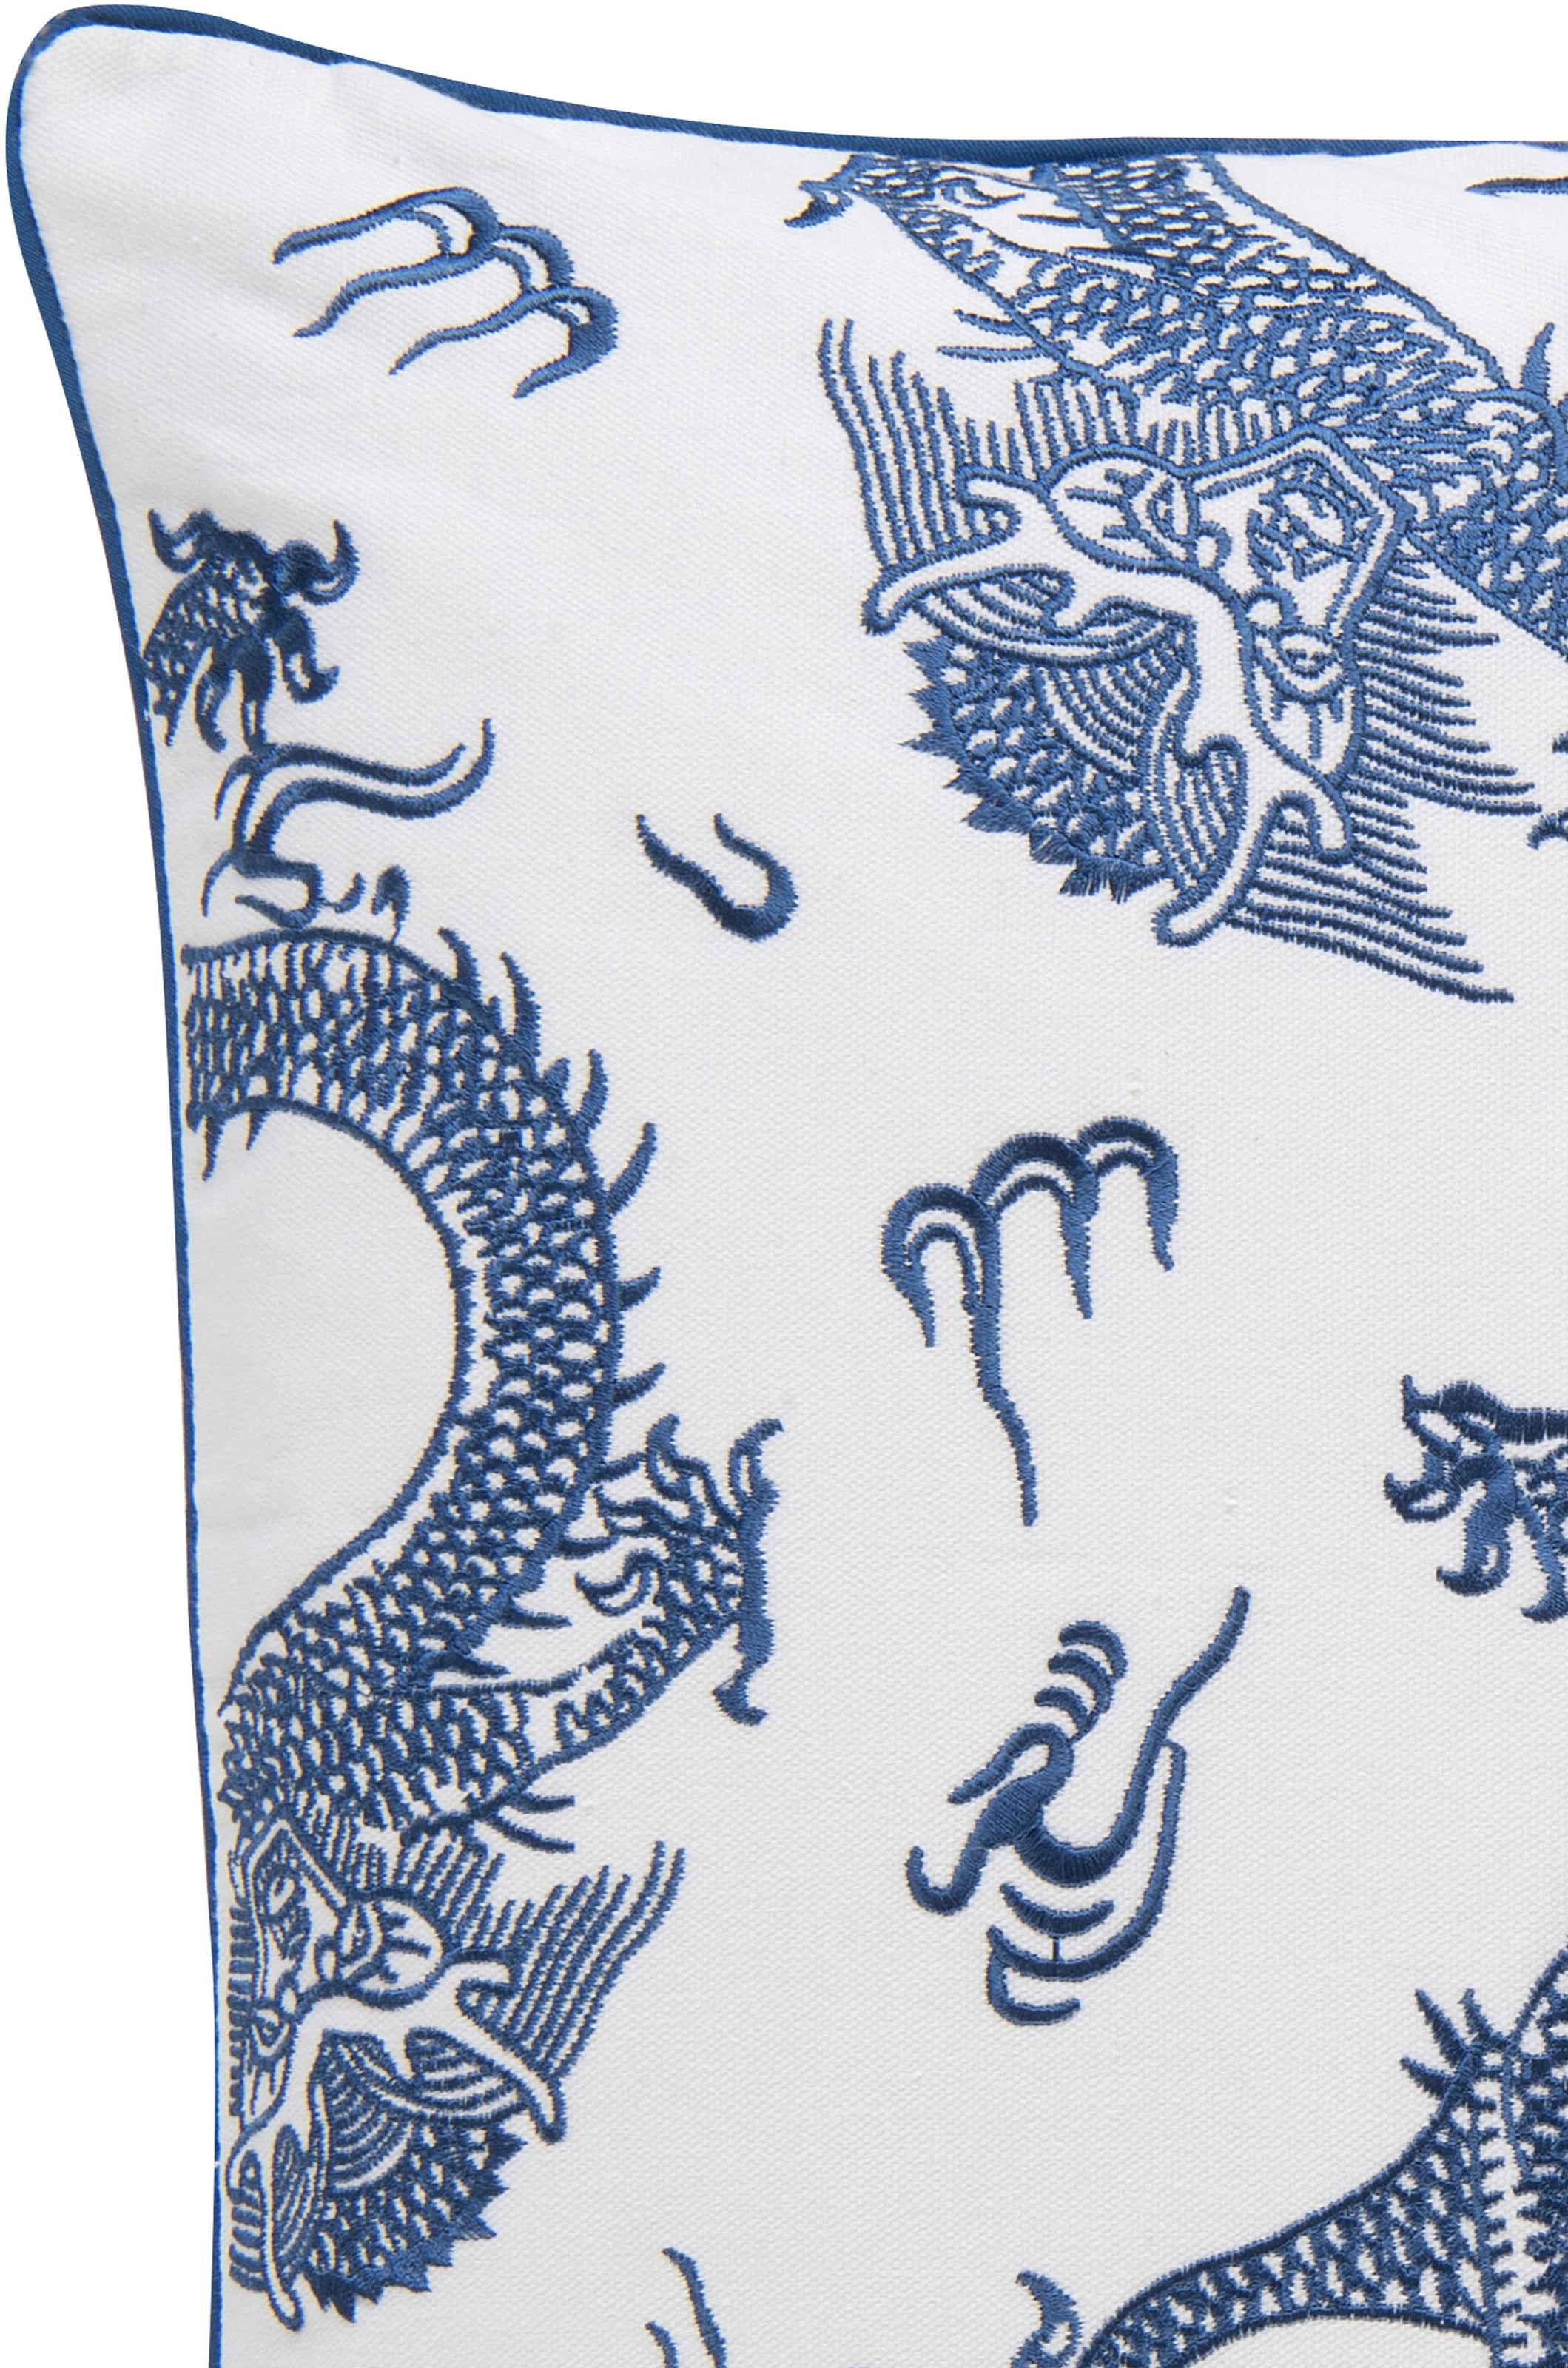 BARBARA Home Collection Dekokissen »Dragon 01 blau-weiß«, Kissenhülle ohne Füllung aus besticktem Leinwandgewebe, 50x50 cm